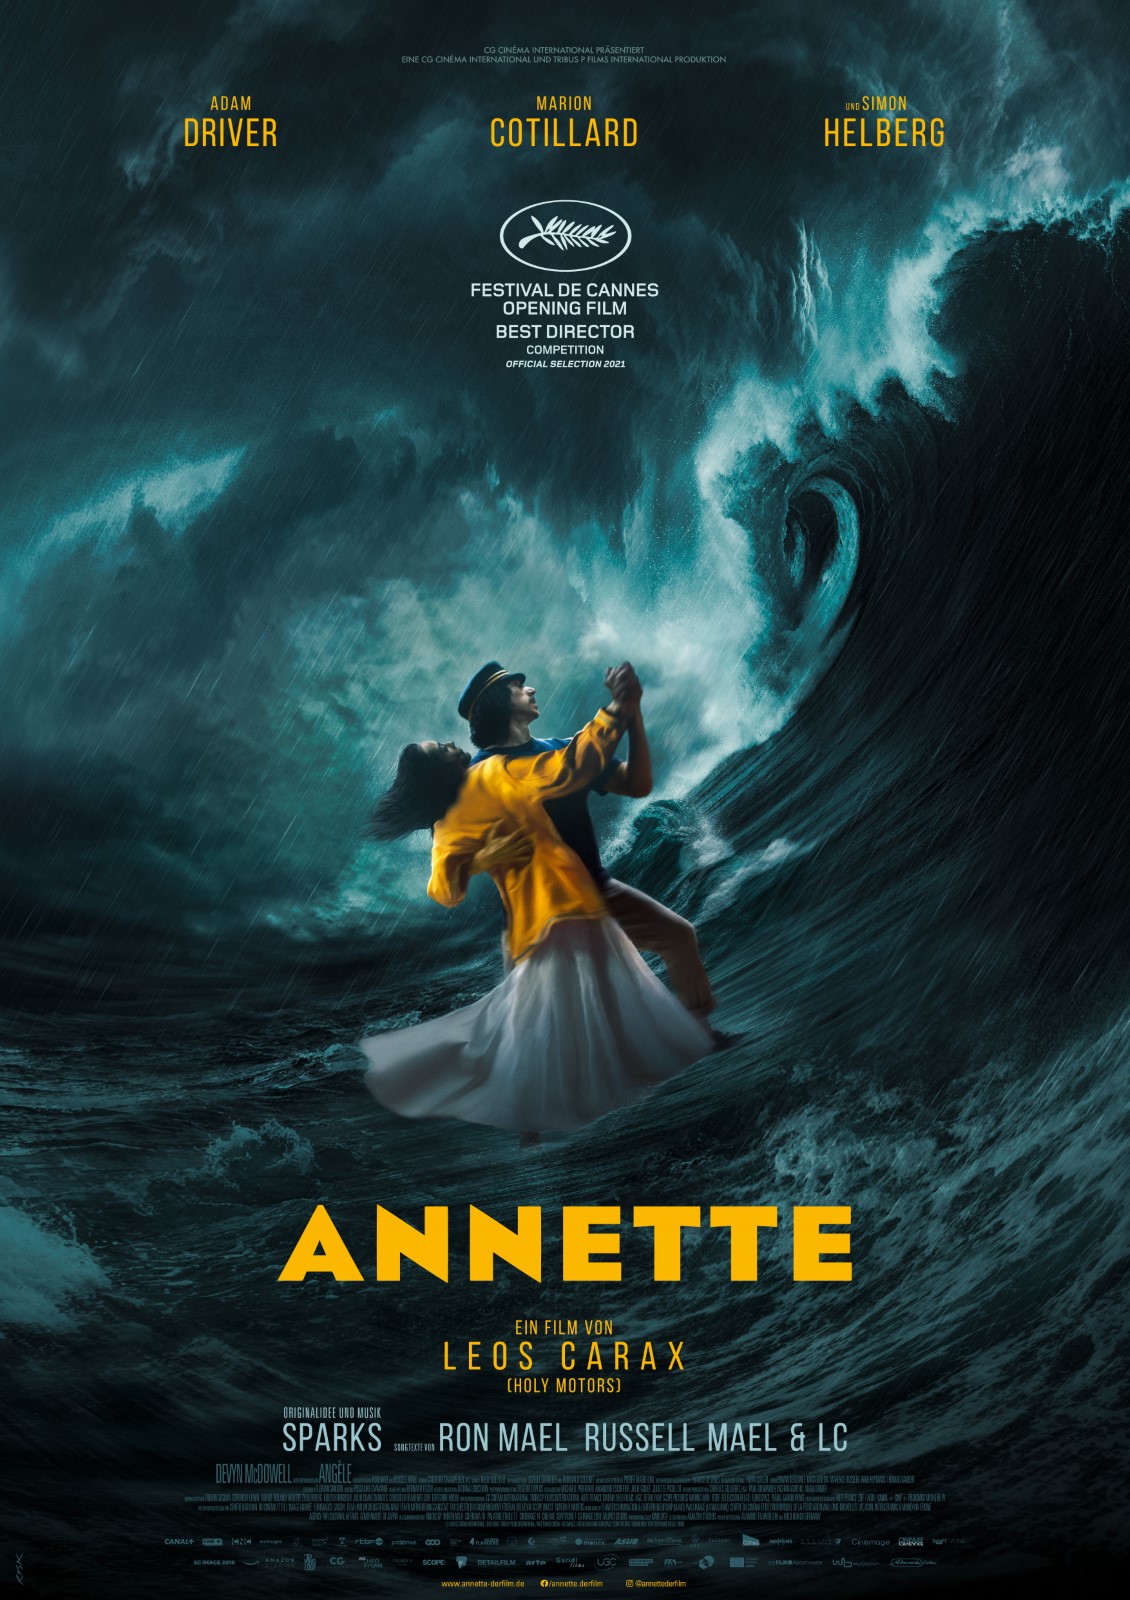 Poster zum Musical Annette zeigt ein tanzendes Paar in einem Sturm auf hoher See